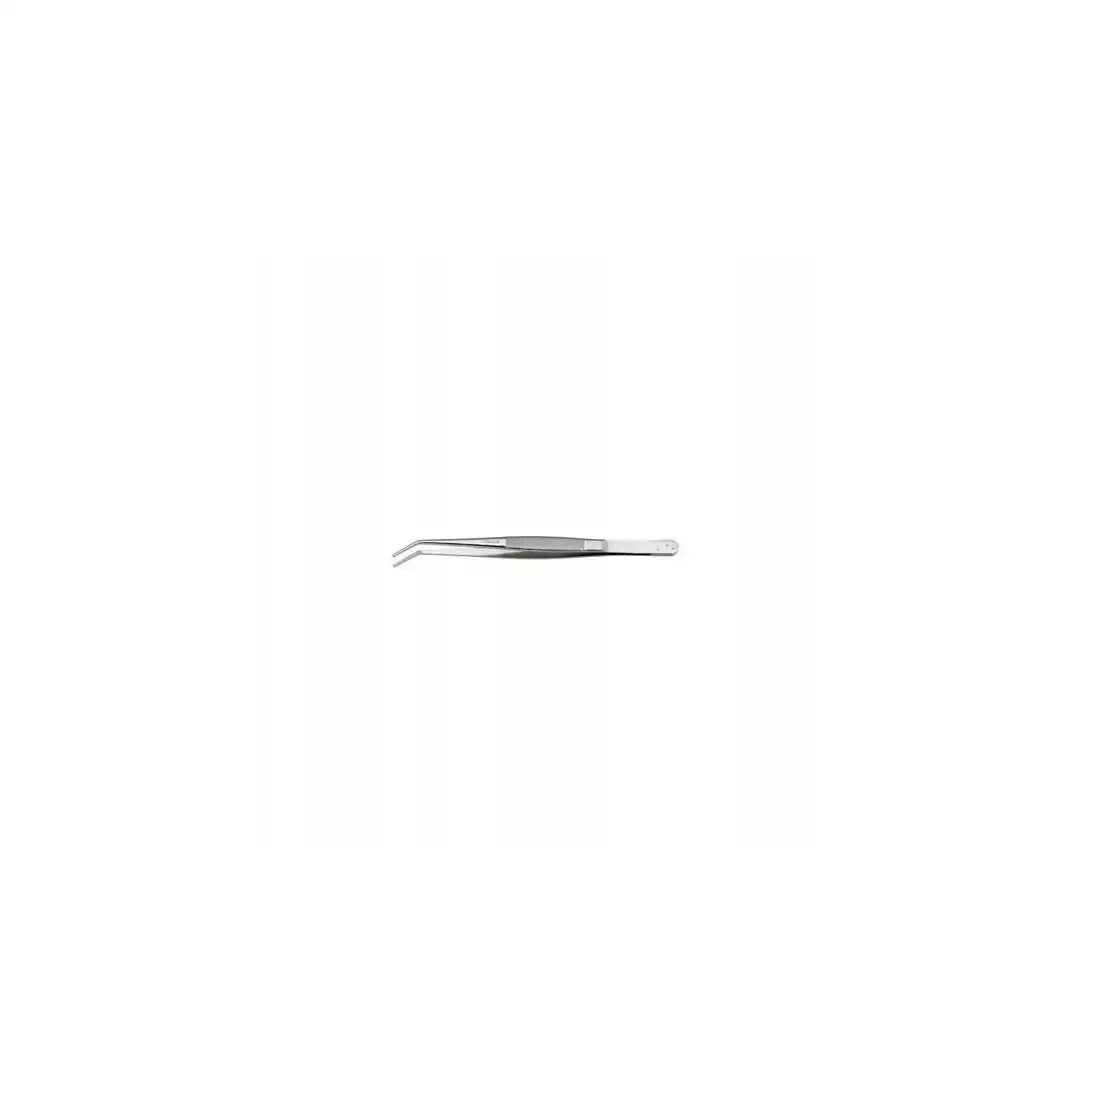 UNIOR tweezers bent with a narrow tip 165 mm